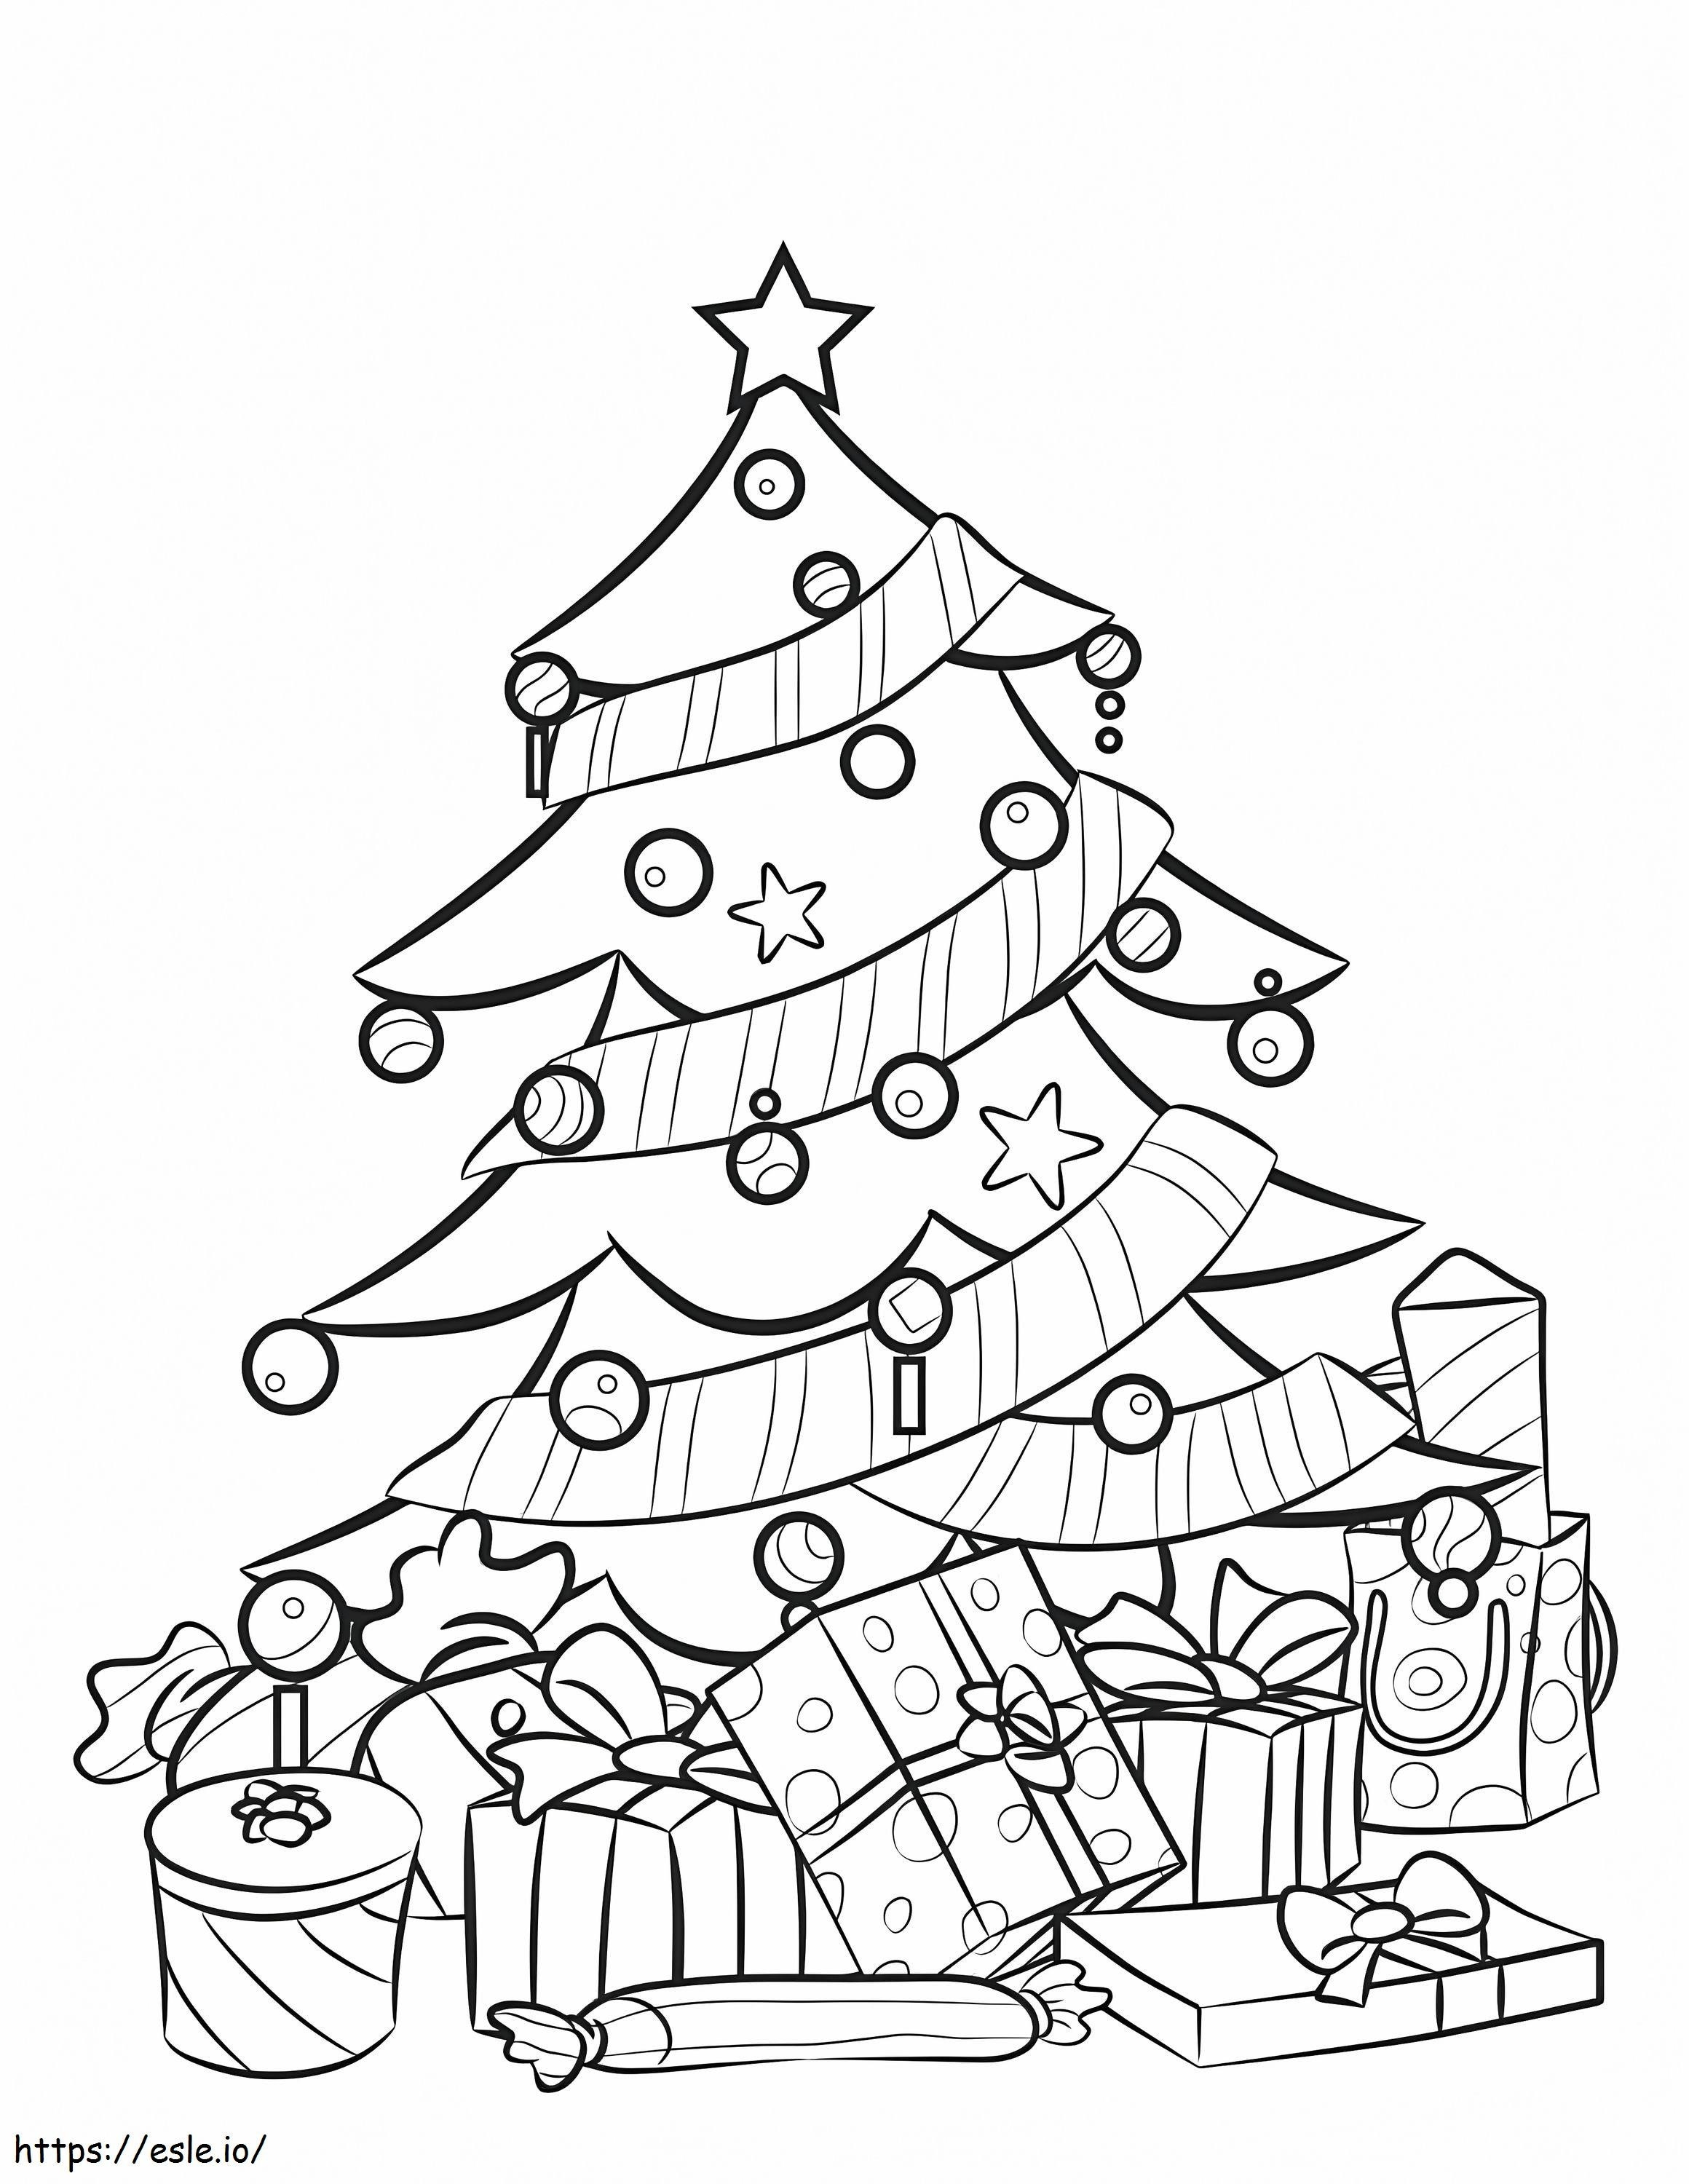 Printable Christmas Tree coloring page